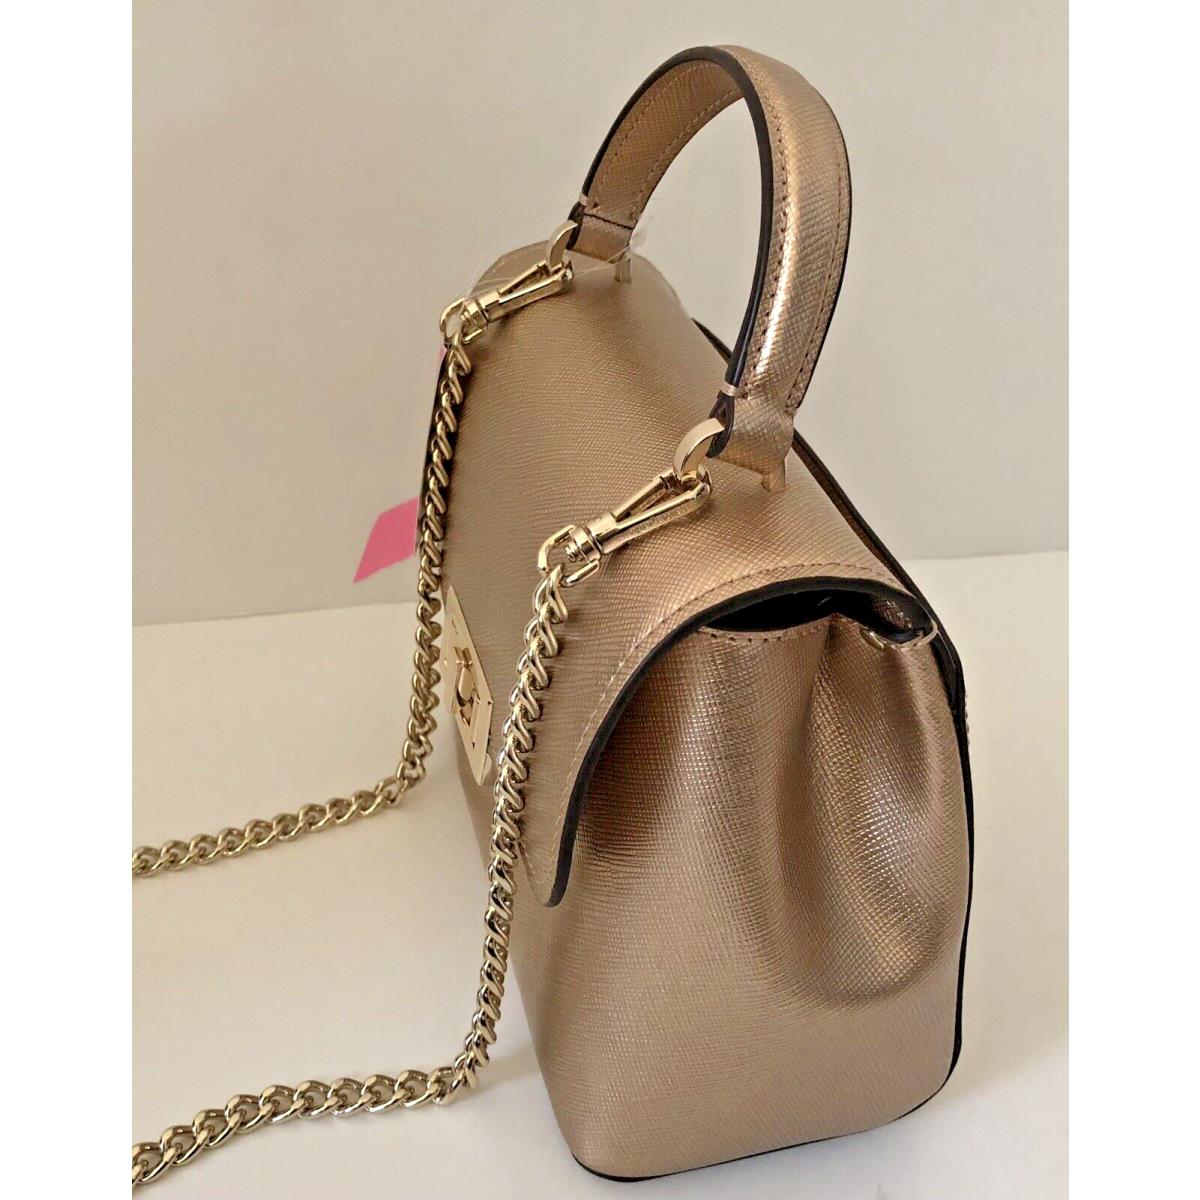 Kate Spade New York Beige Leather Tote / Shoulder Bag / Everyday Handbag /  Purse | Kate spade shoulder bag, Everyday handbag, Black tote purse